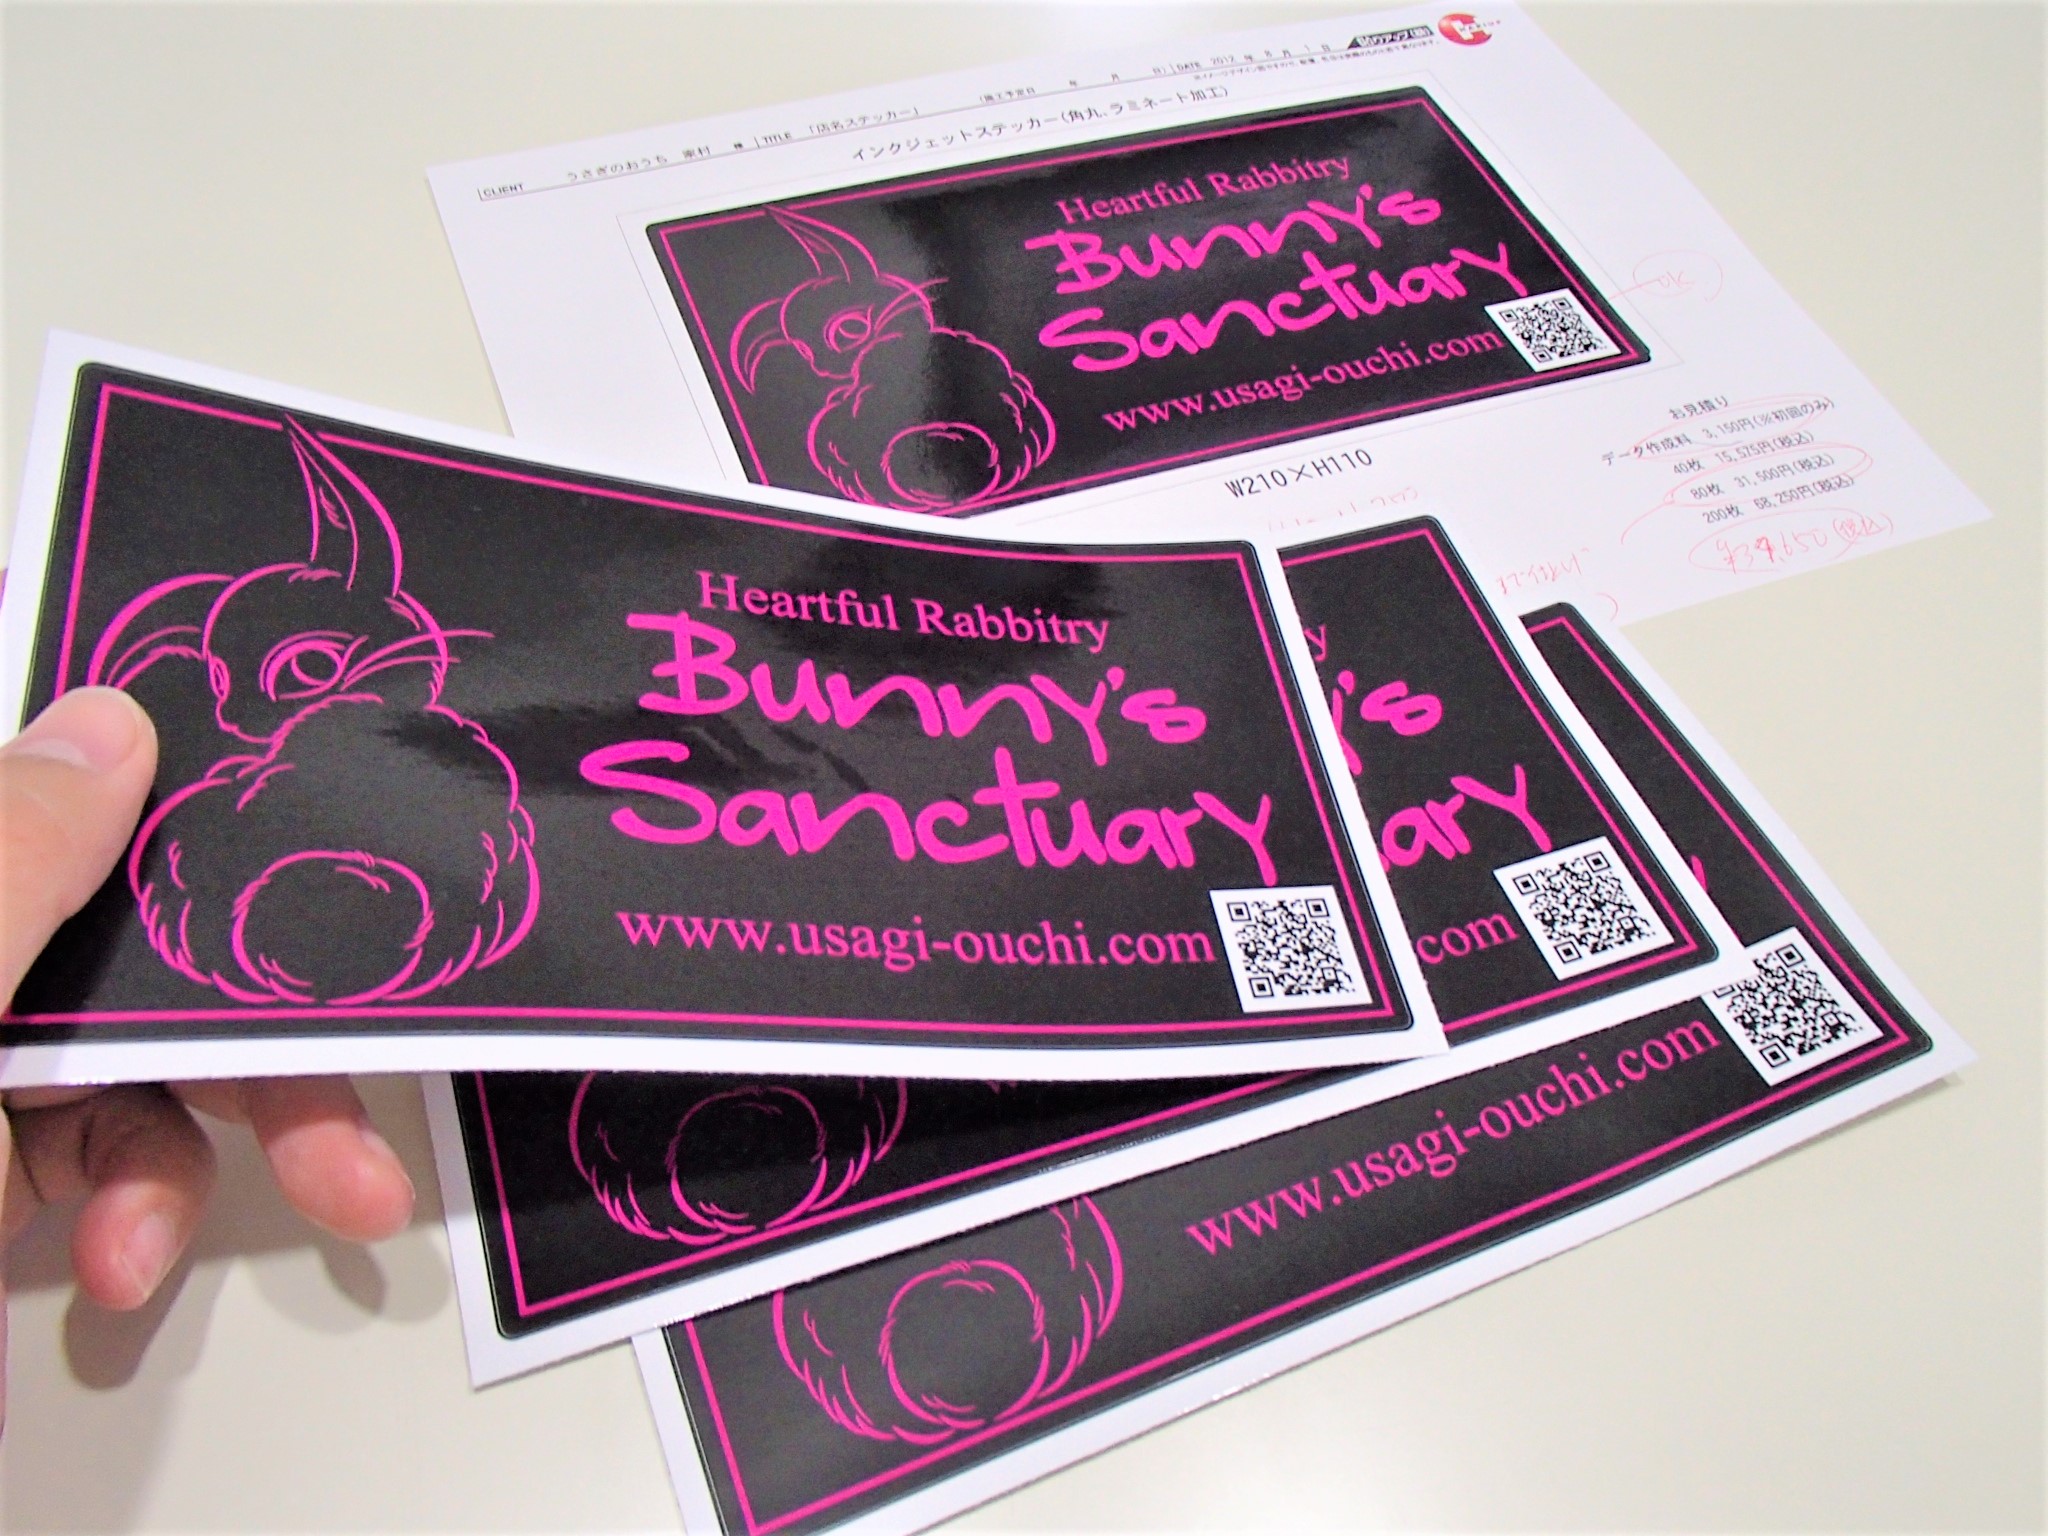 ショップステッカー／福岡うさぎ専門店『Bunny’s Sanctuary』様